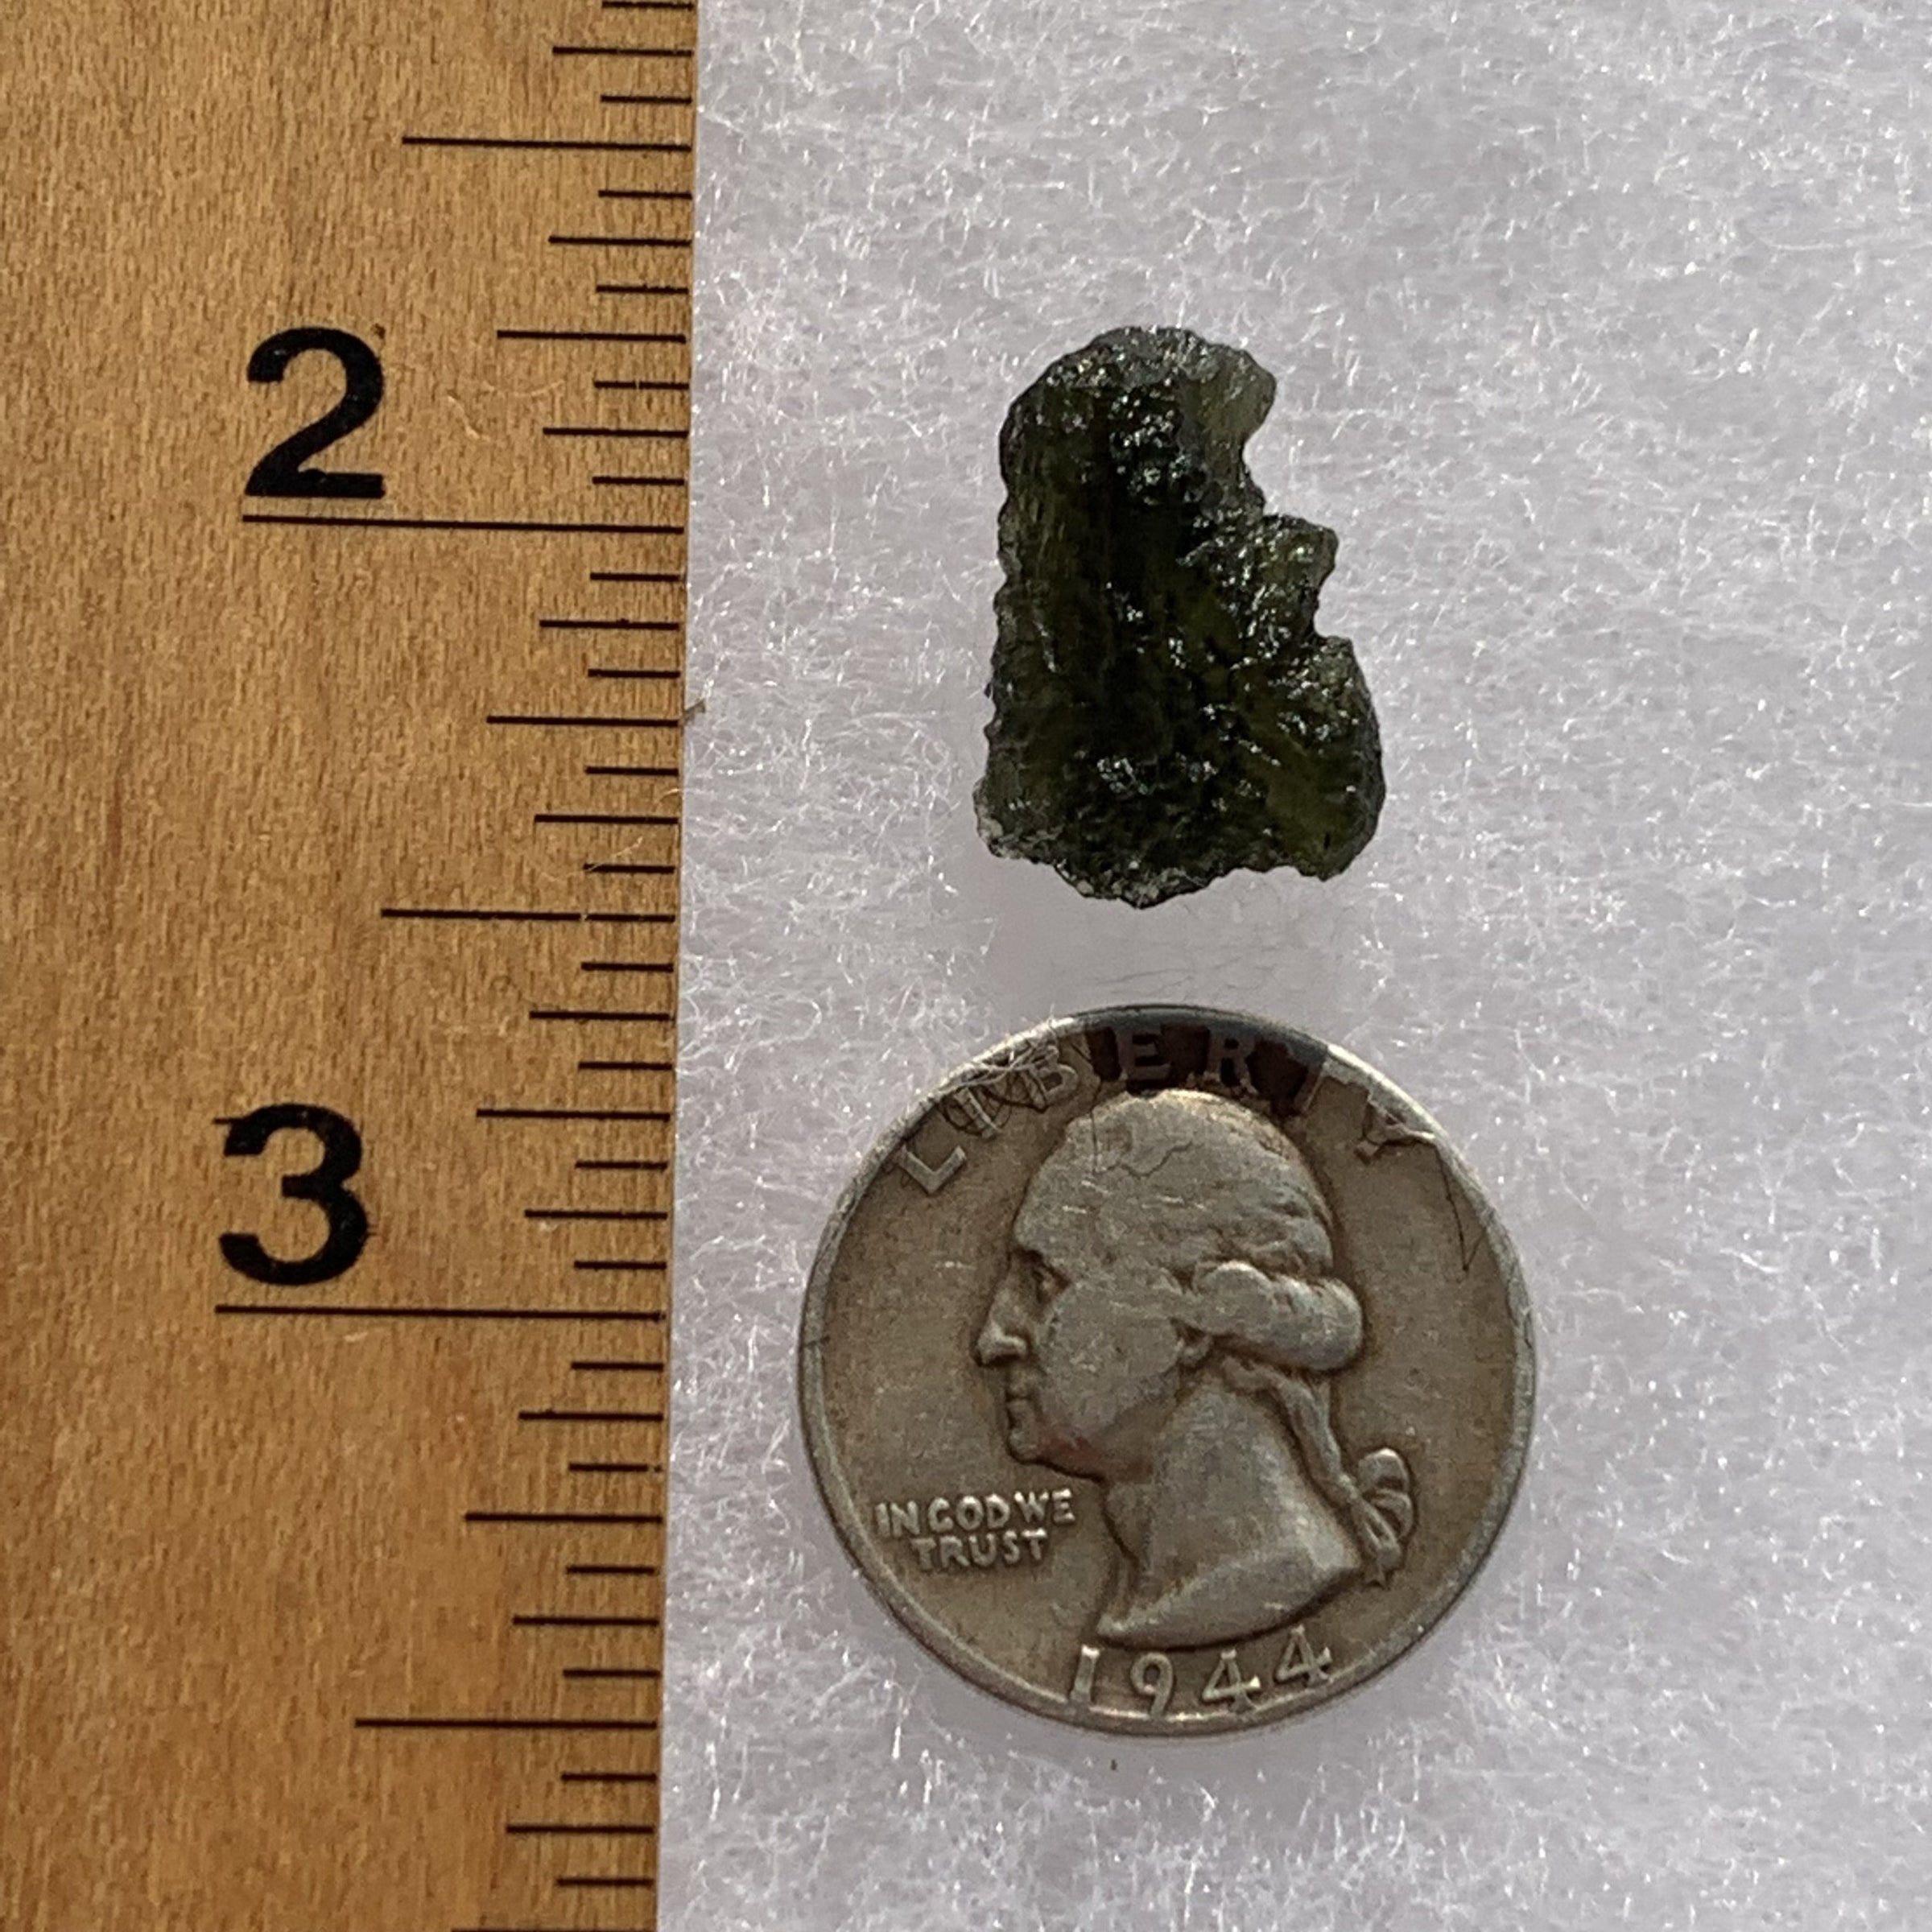 Moldavite 1.9 grams